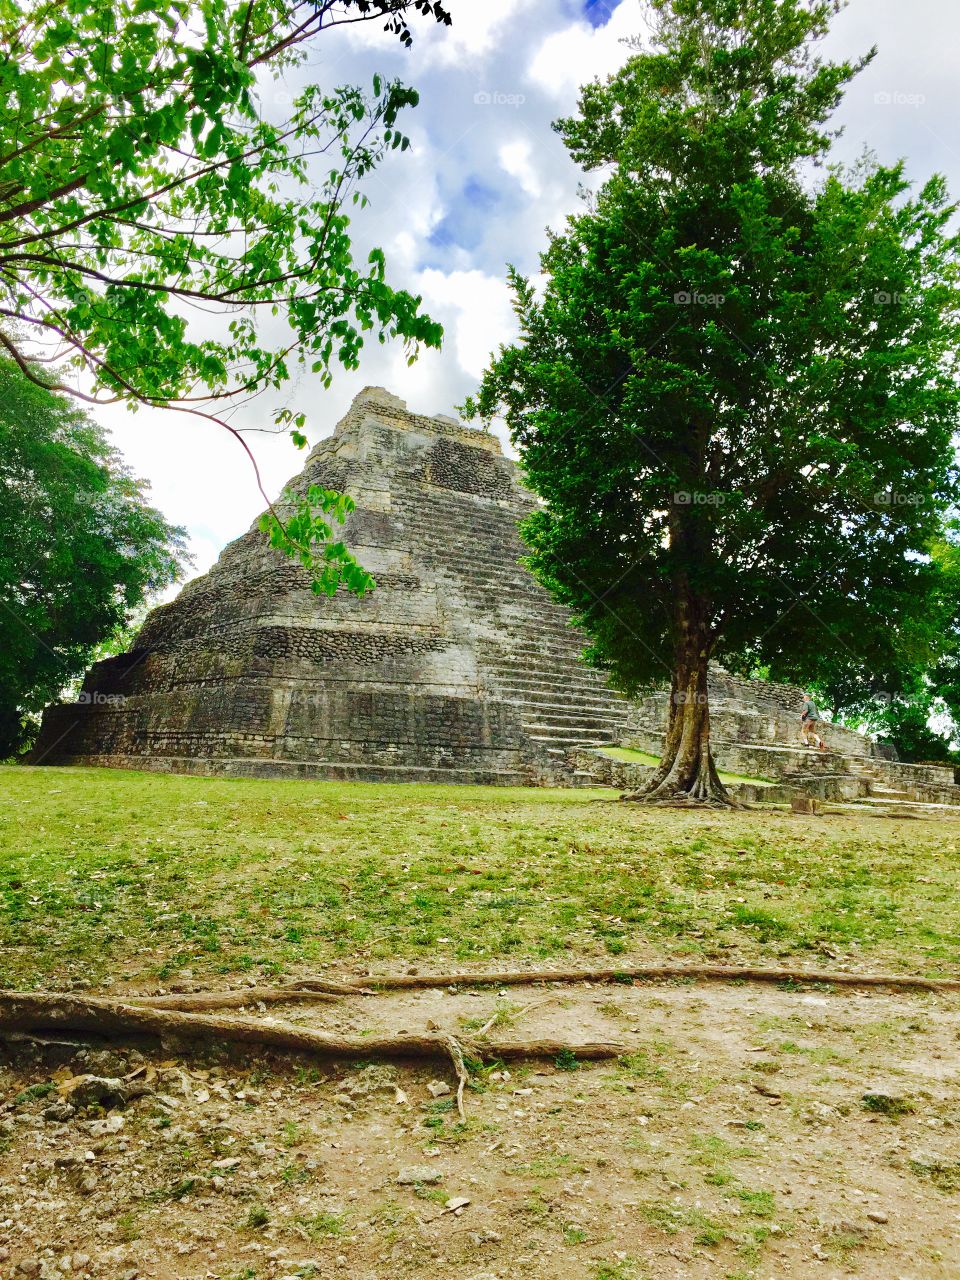 Chacchoben Mayan Pyramid. 